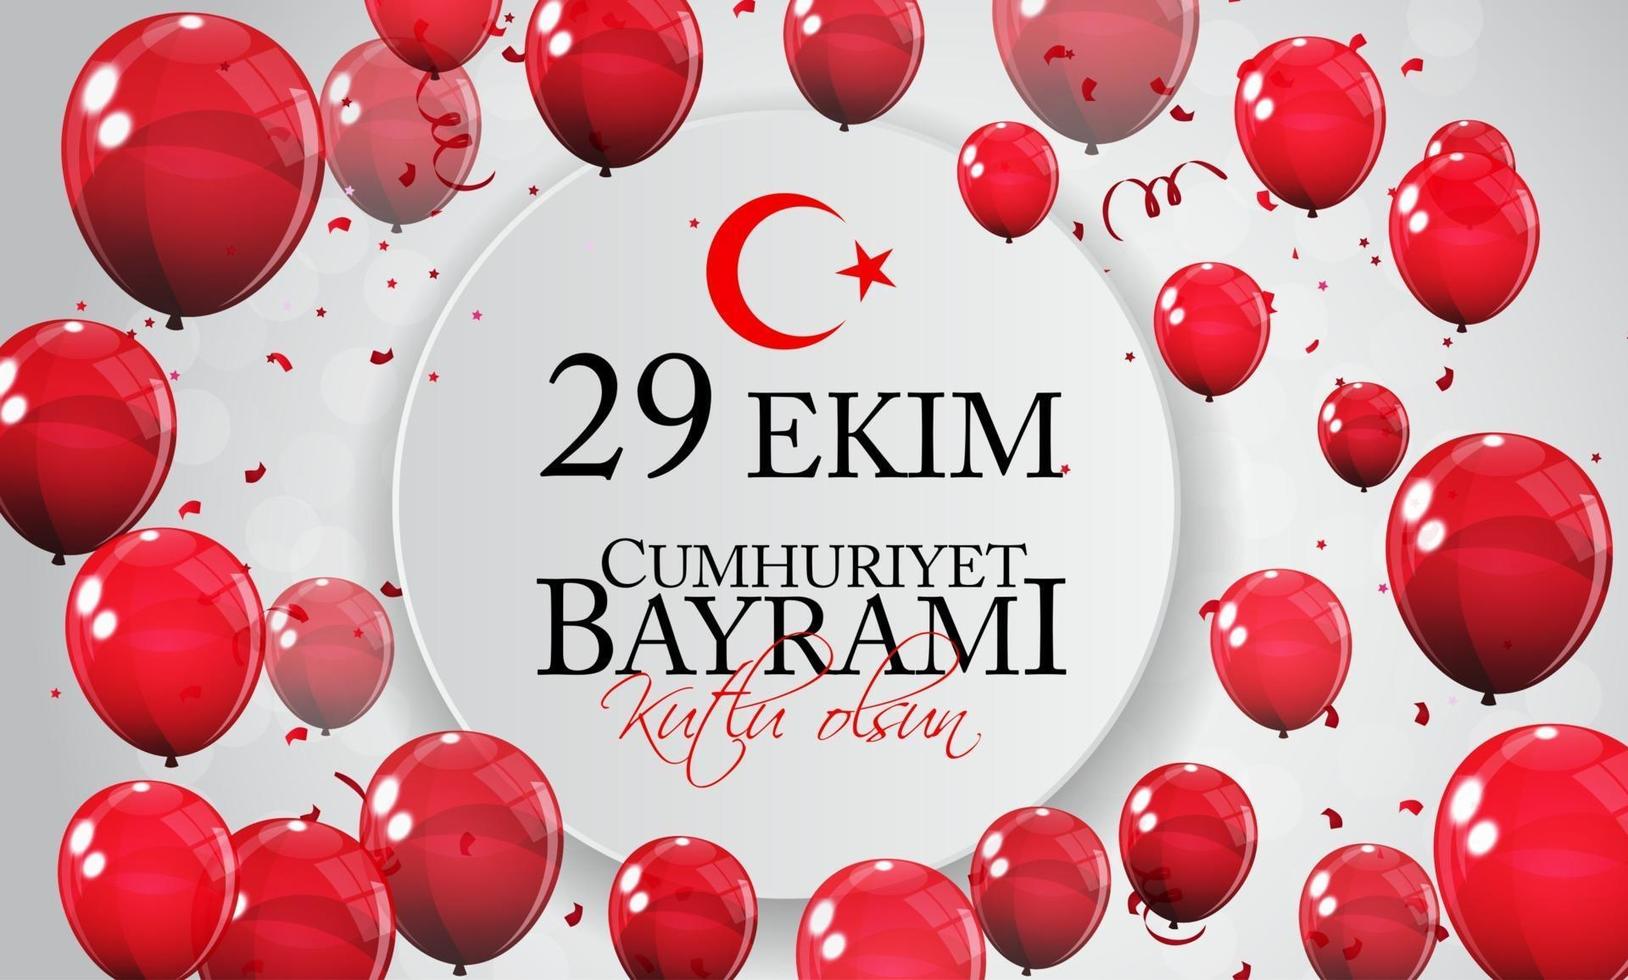 29 ekim cumhuriyet bayrami kutlu olsun. Übersetzung 29. Oktober Tag der Republik Türkei und der Nationalfeiertag in der Türkei, schönen Feiertag vektor